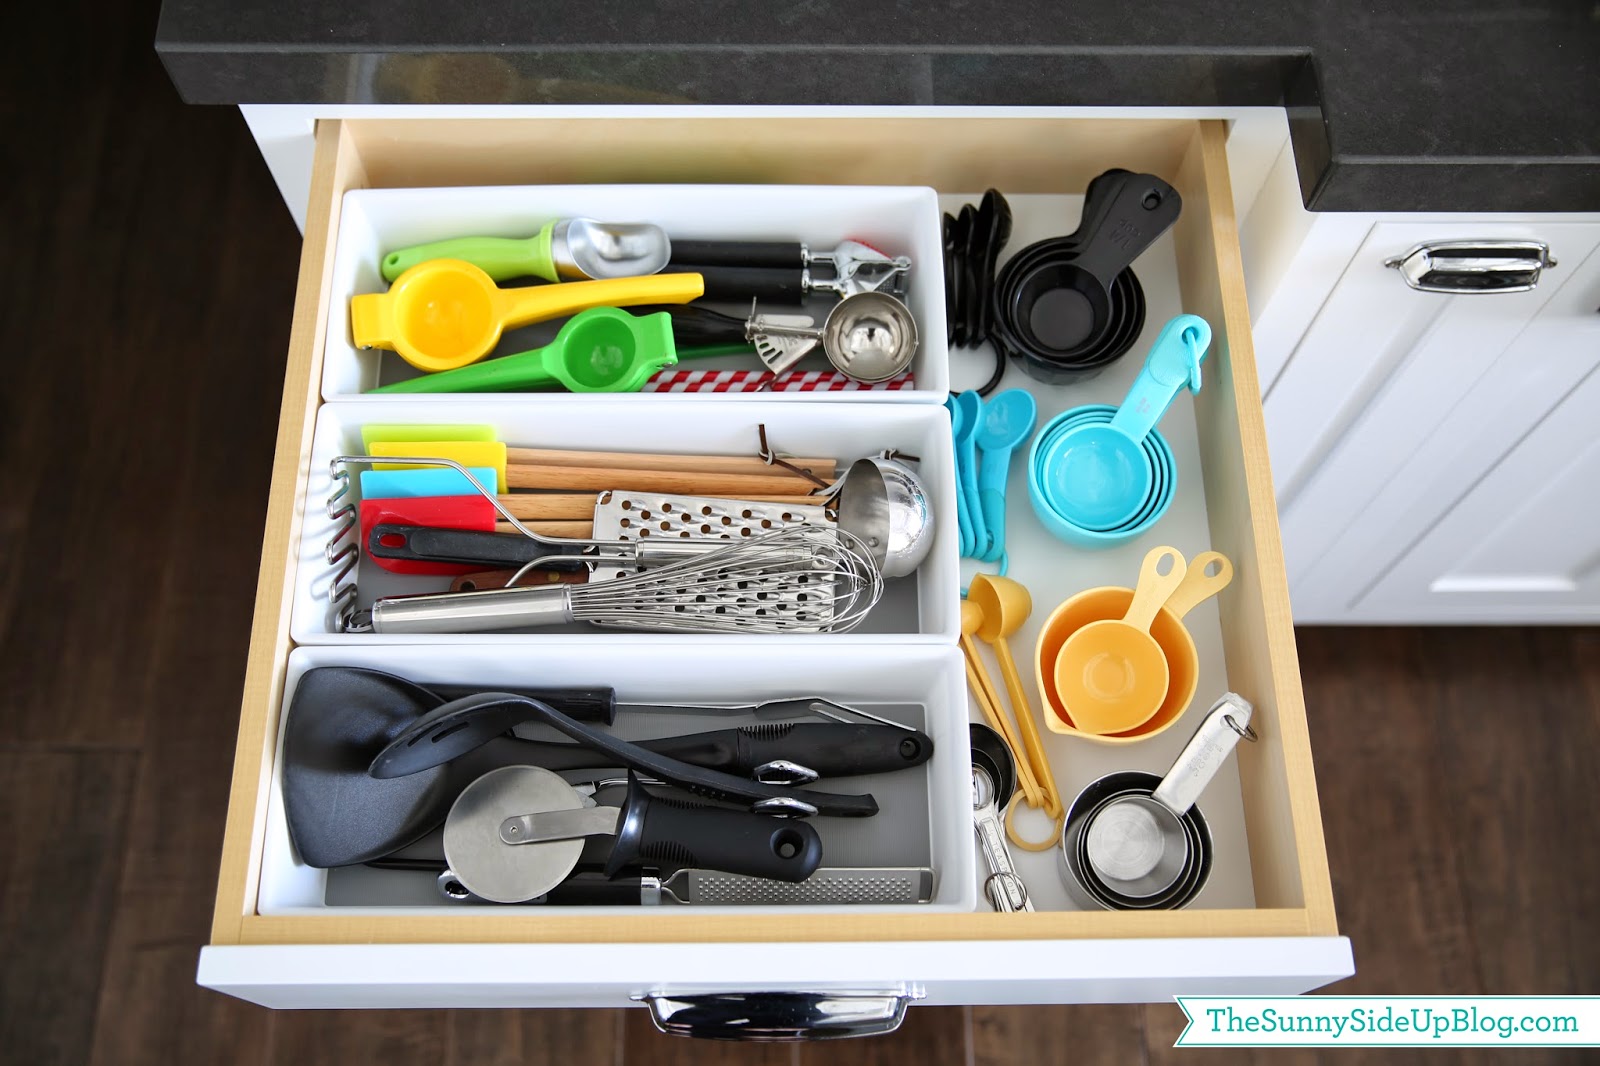 https://www.thesunnysideupblog.com/wp-content/uploads/2014/03/kitchen-utensil-drawer.jpg